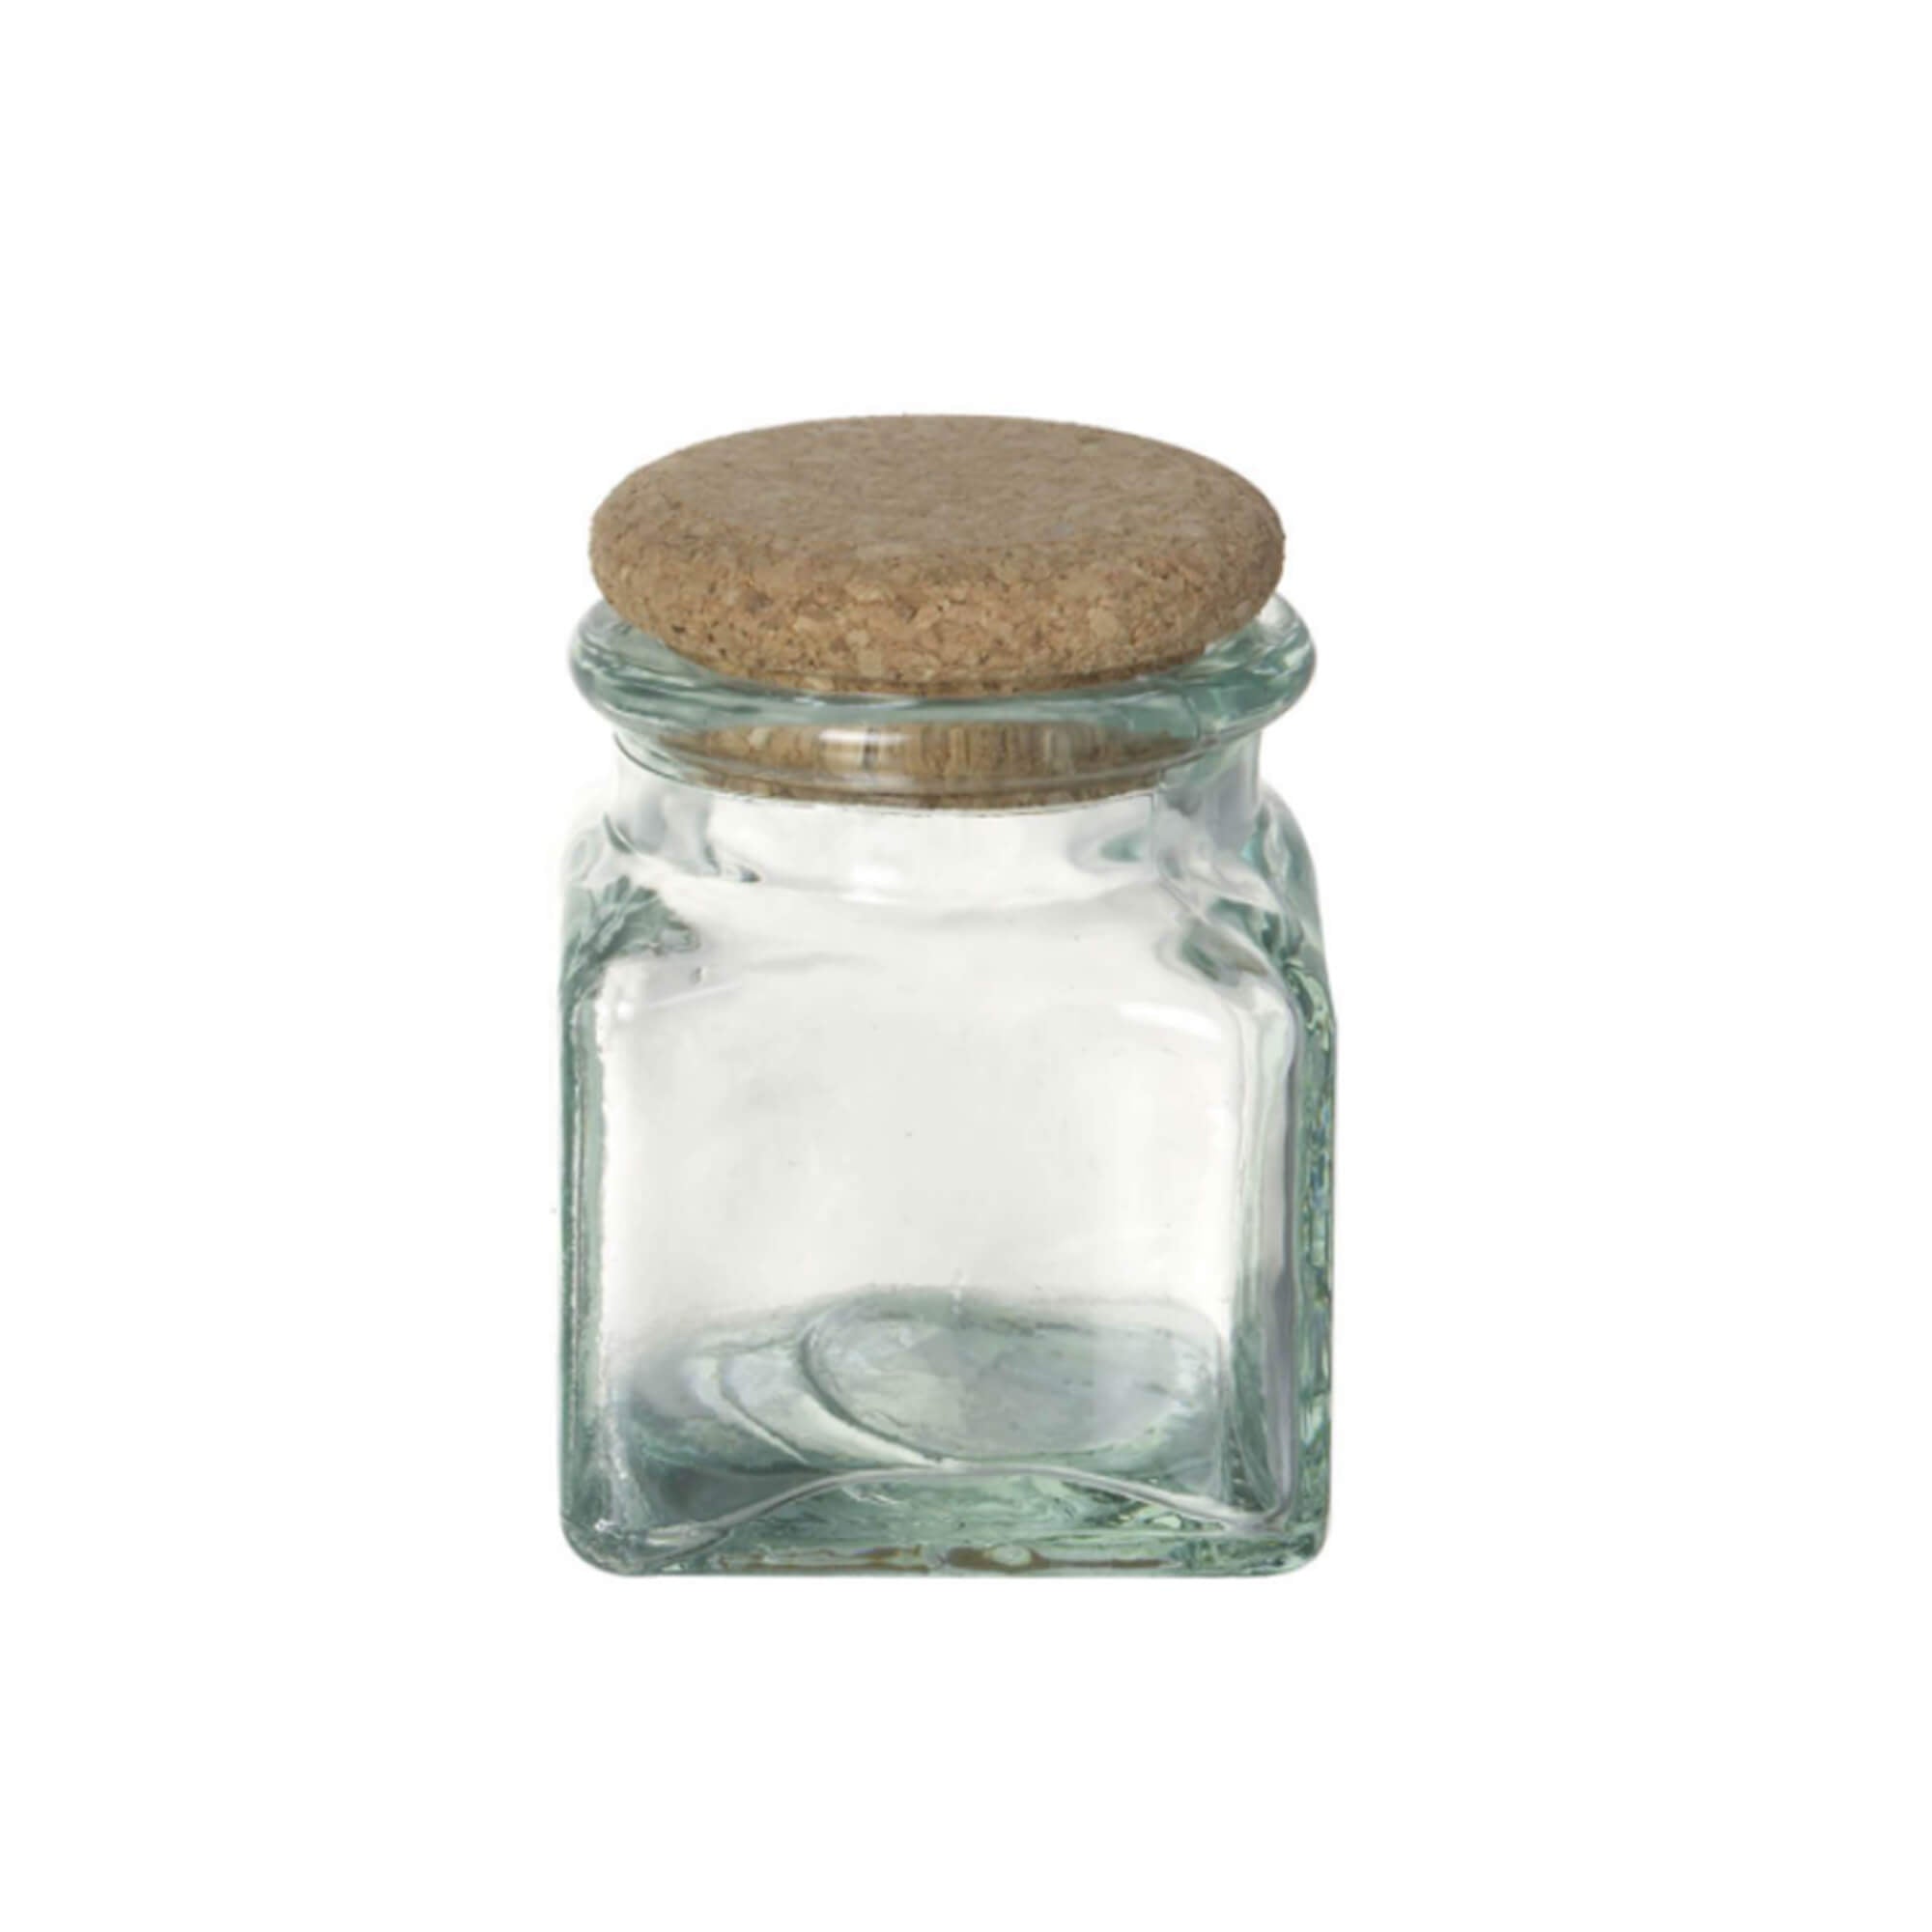 Cork Top Short Glass Jar